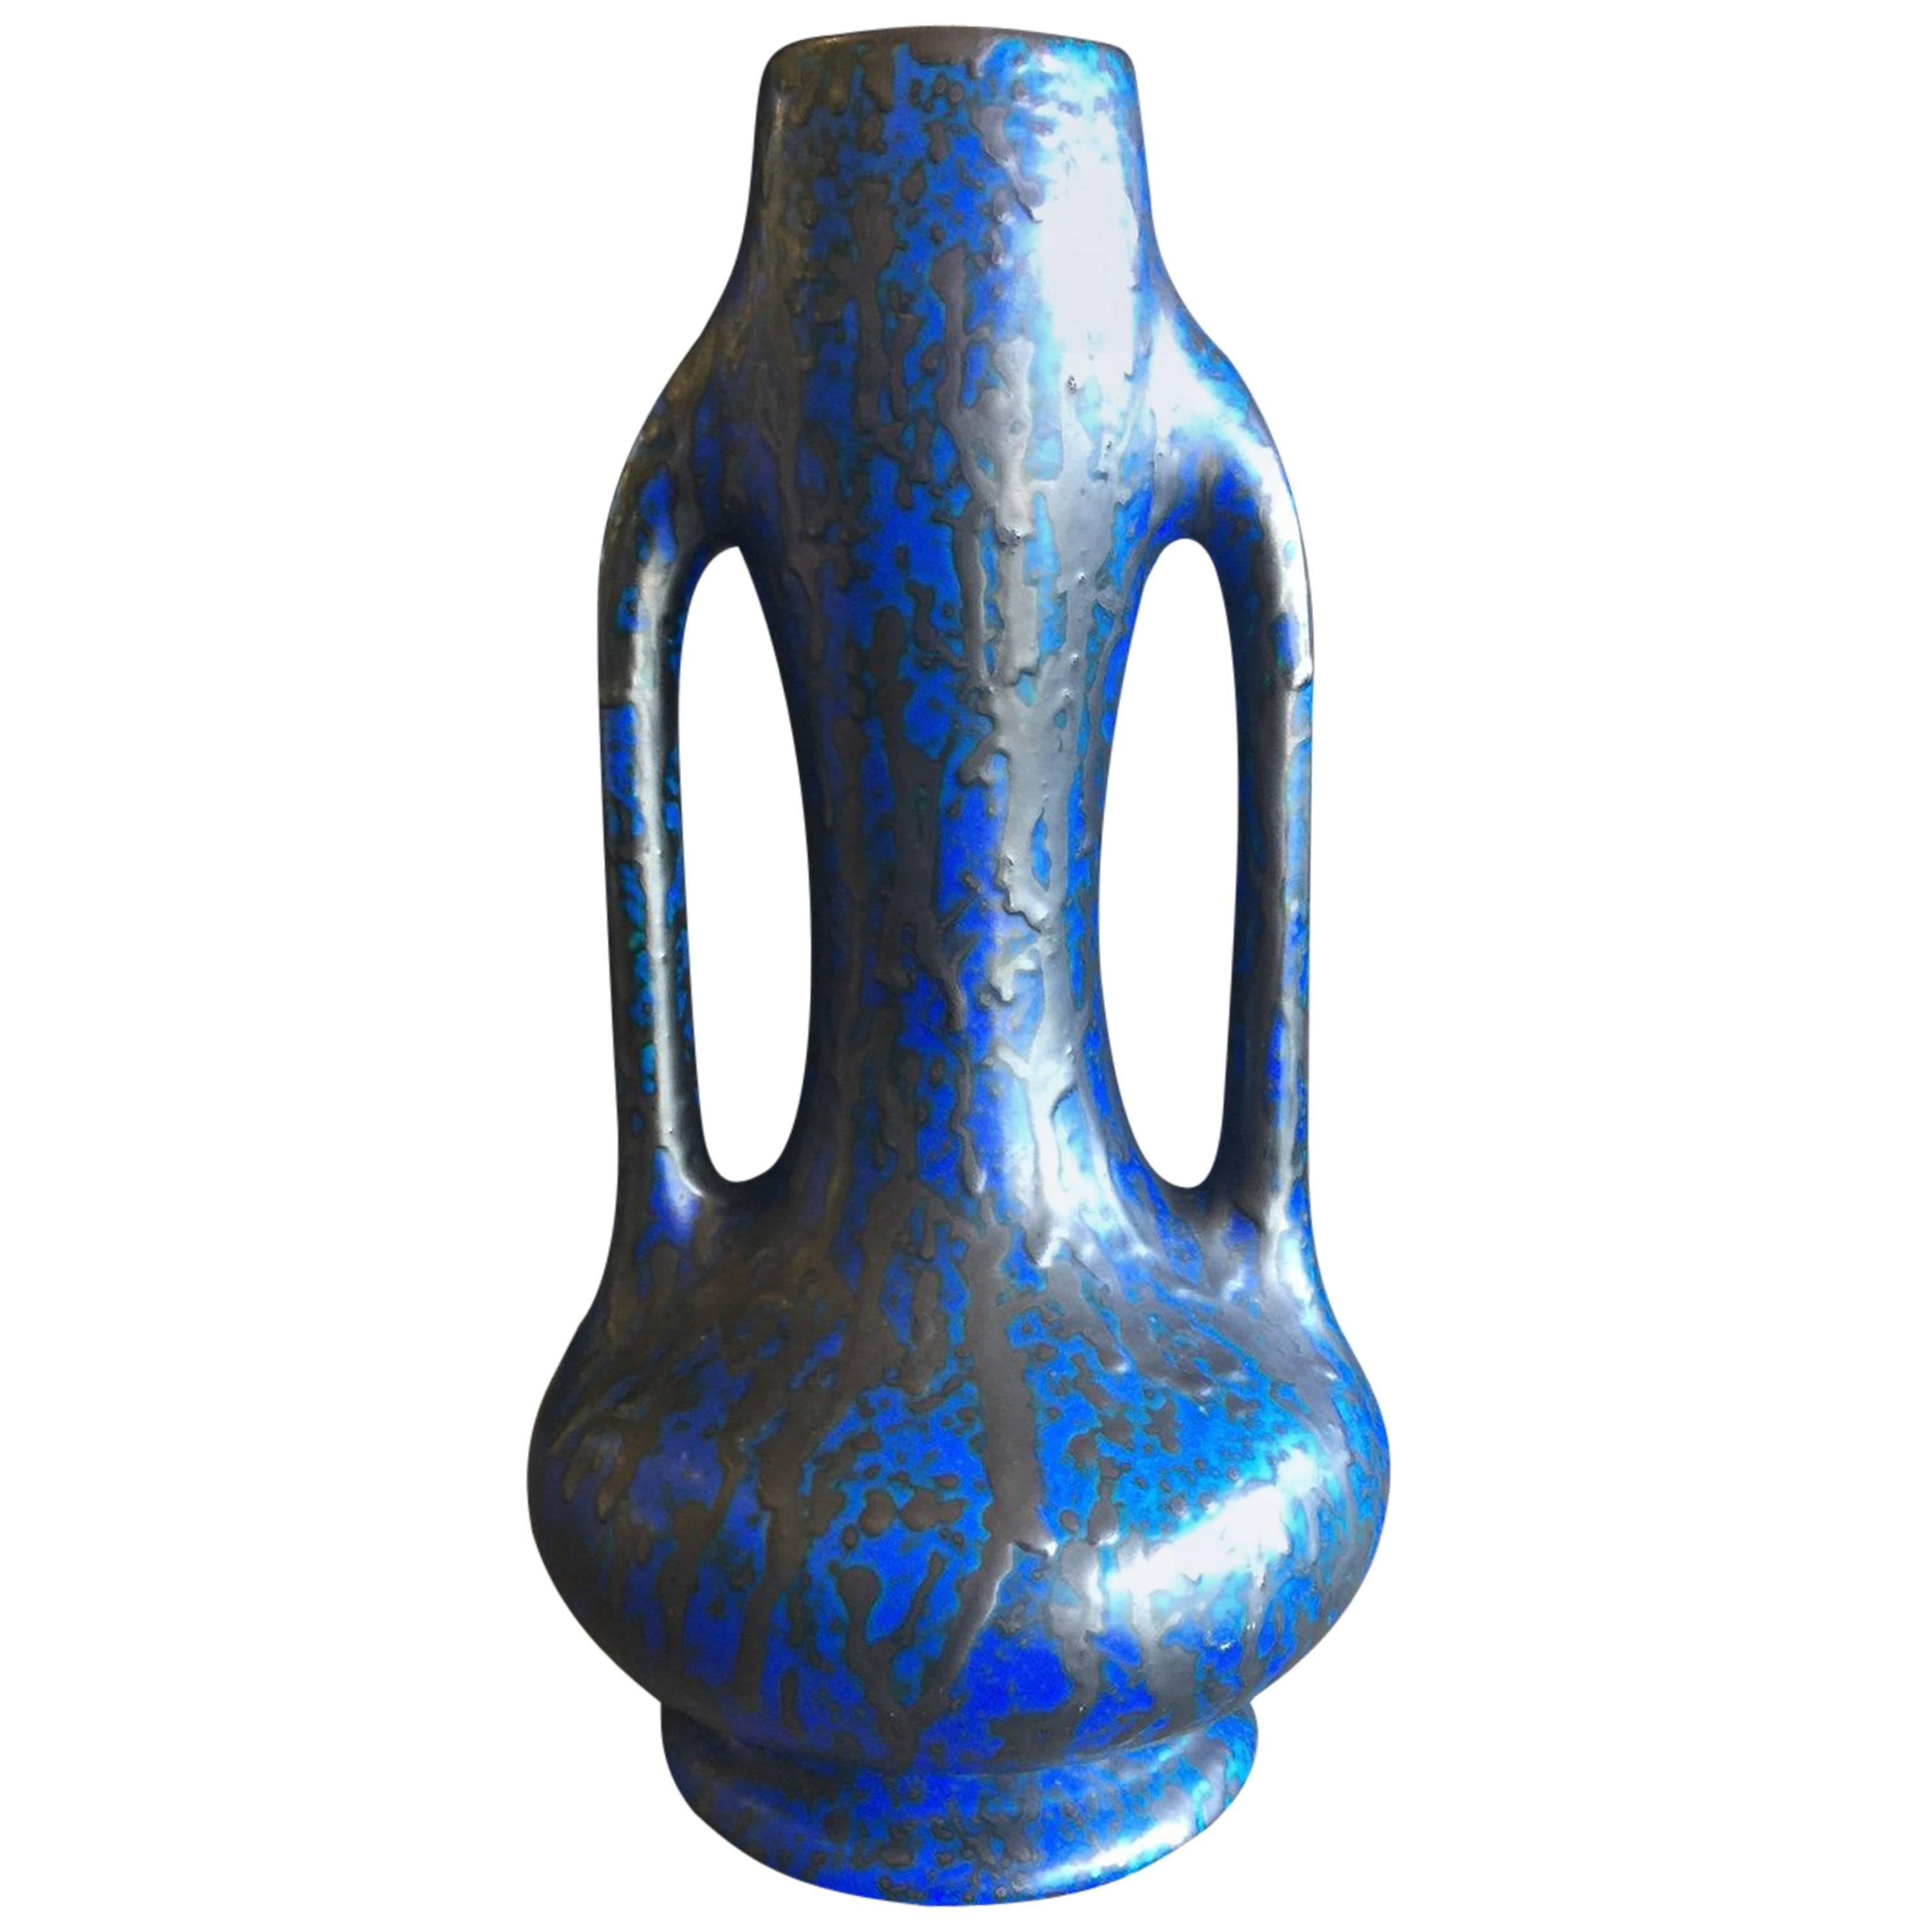 Midcentury Dual Handled Lava Glazed Vase by Ceramique De Bruxelles of Belgium